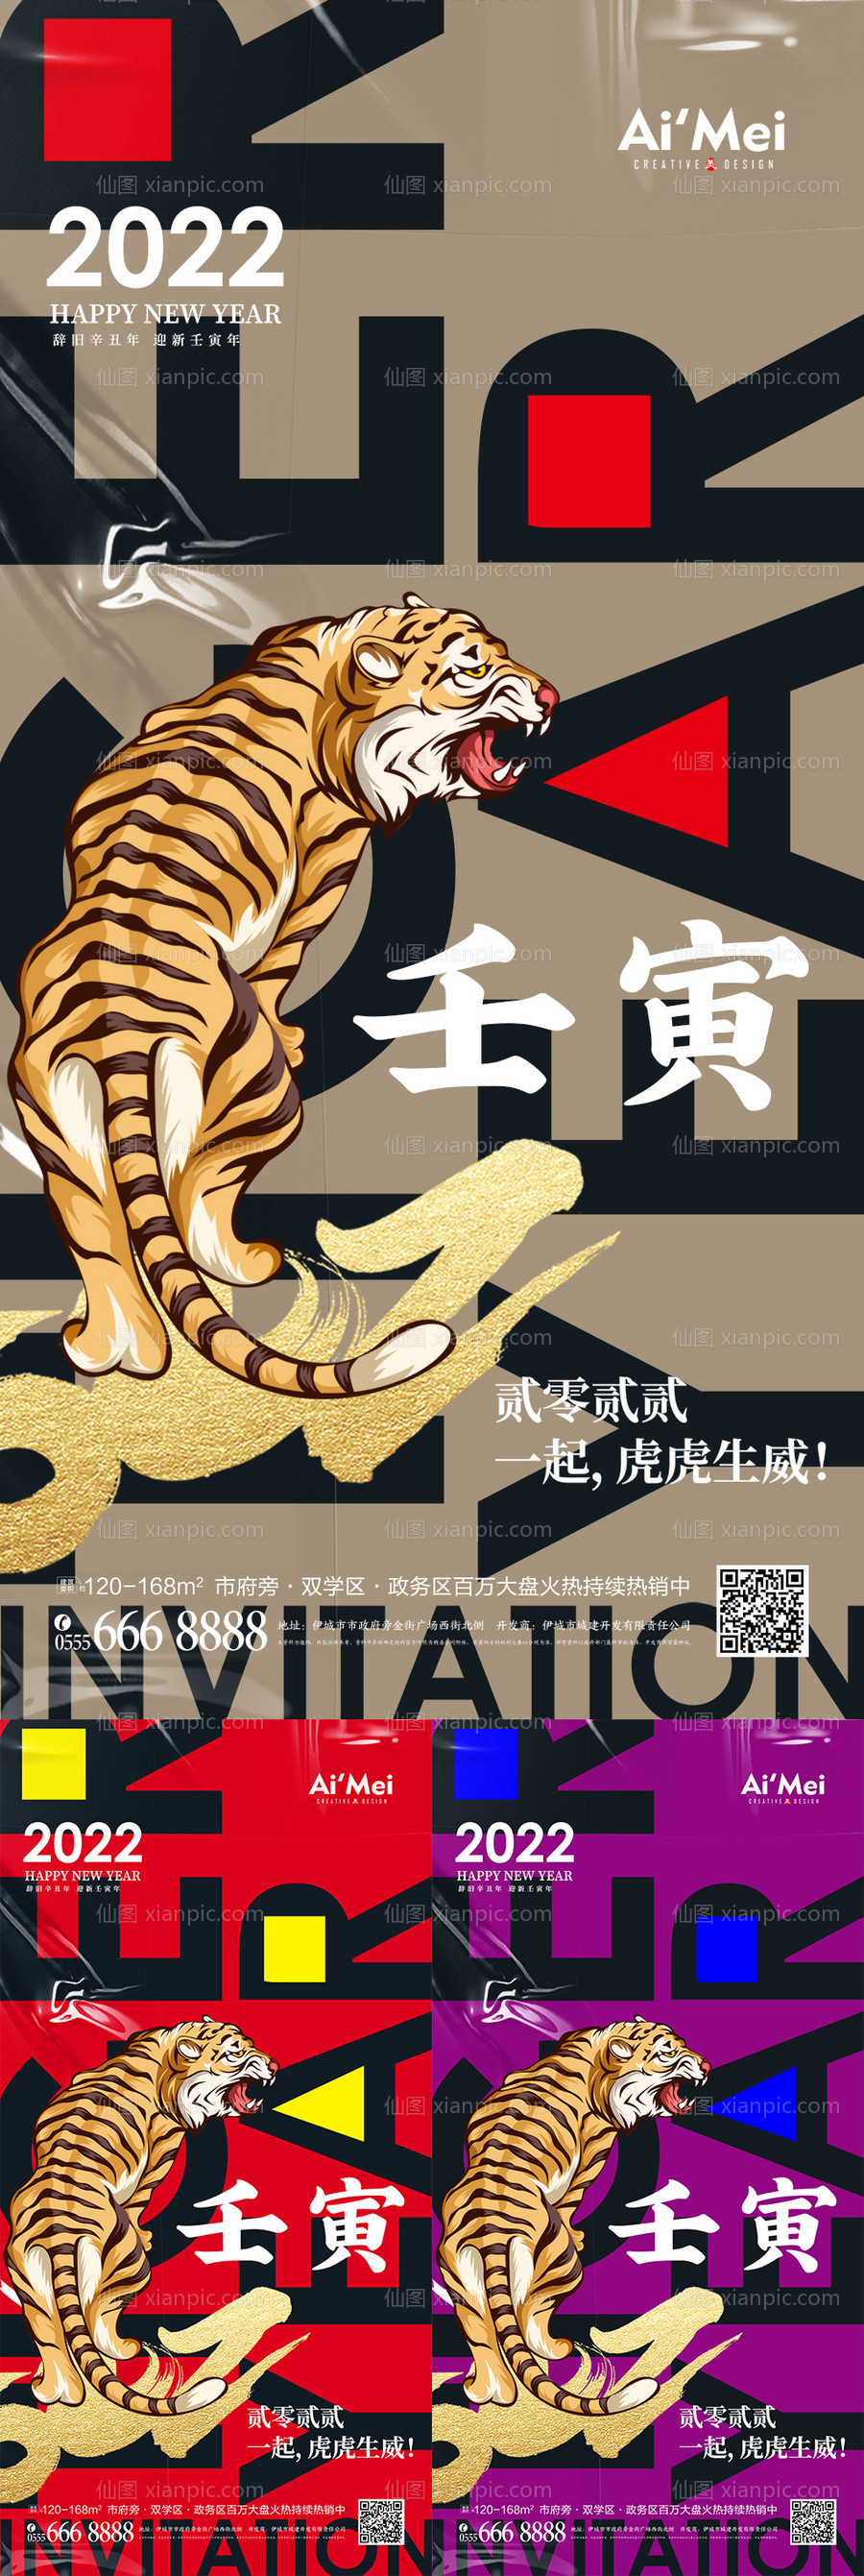 素材乐-创意2022虎年宣传通用海报